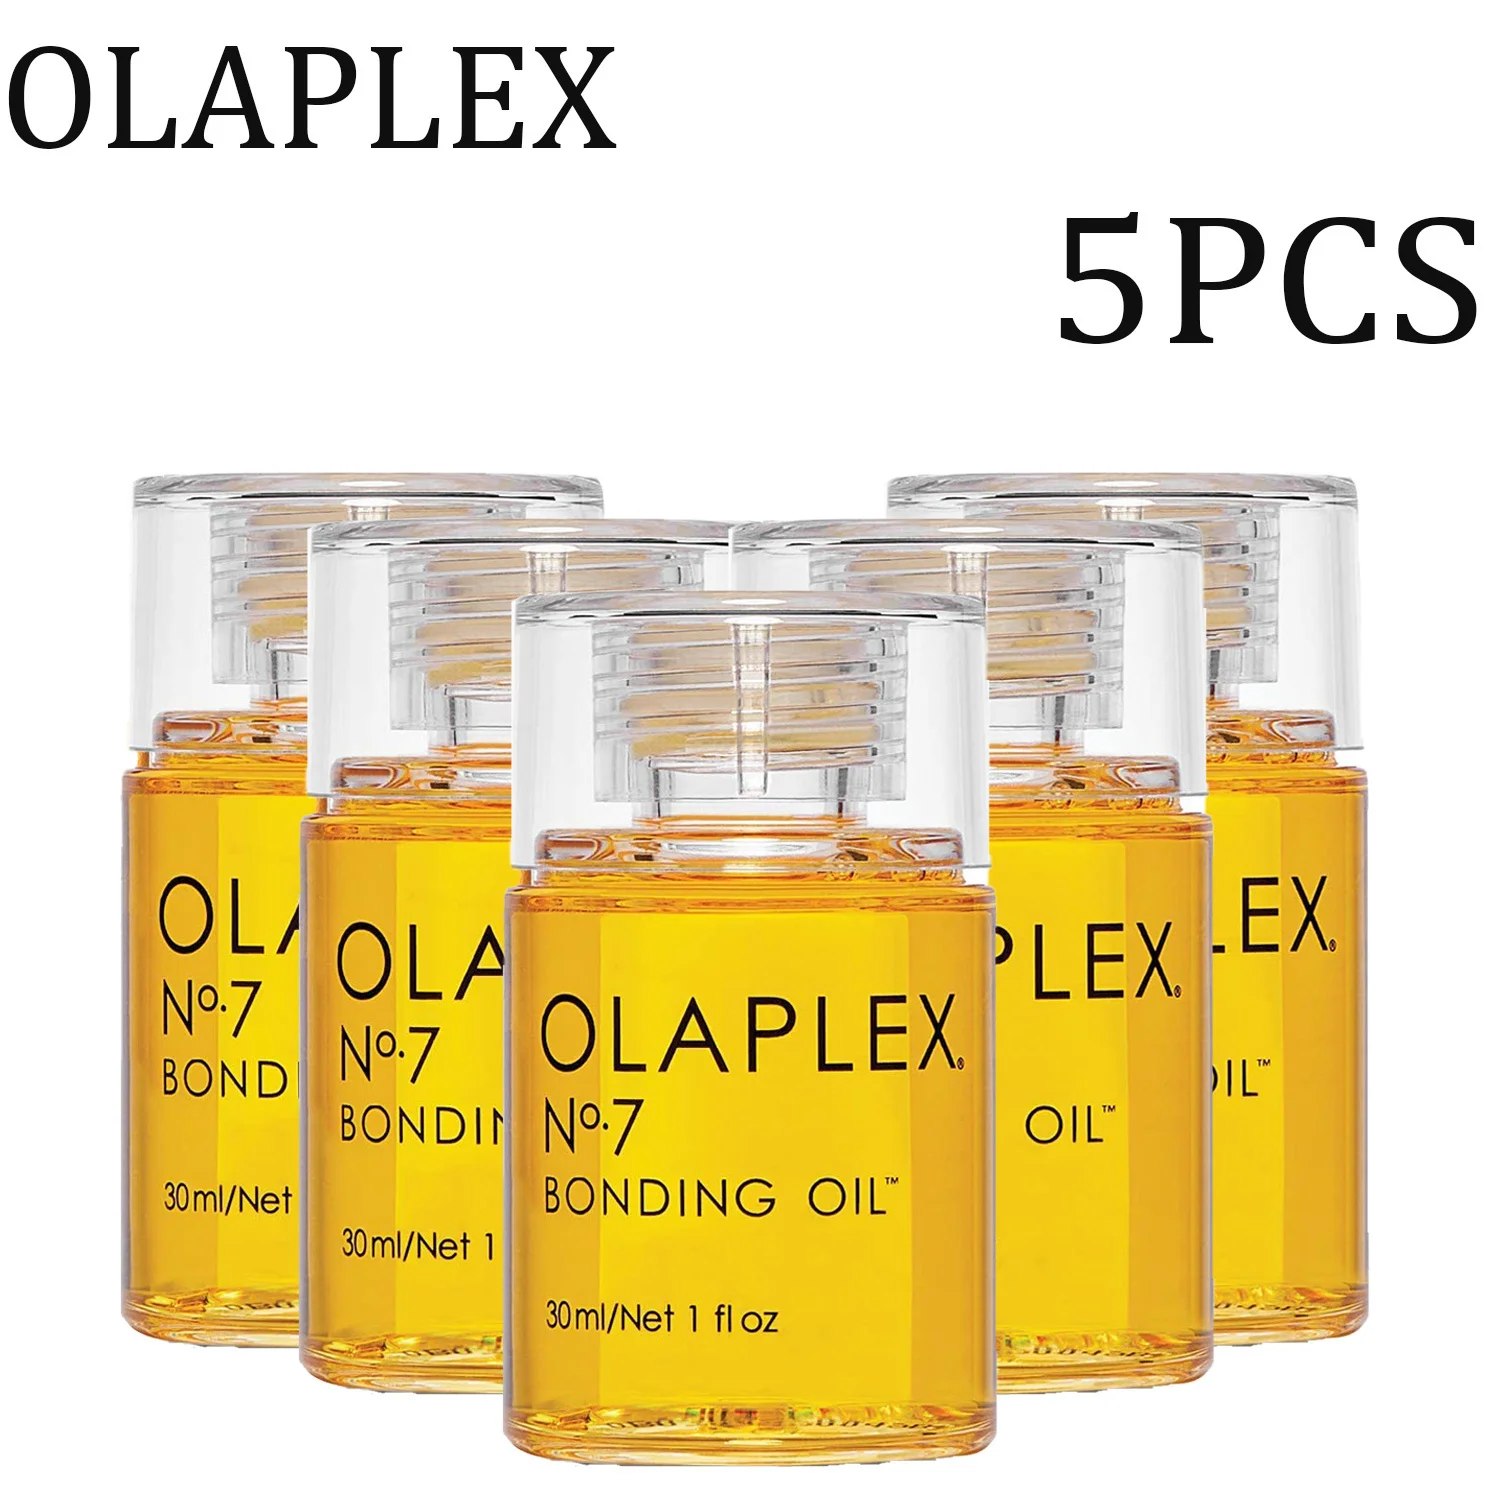 

Эфирное масло для волос Olaplex № 7, 5 шт., оригинальное восстанавливающее масло против высоких температур, кондиционер для ухода за волосами